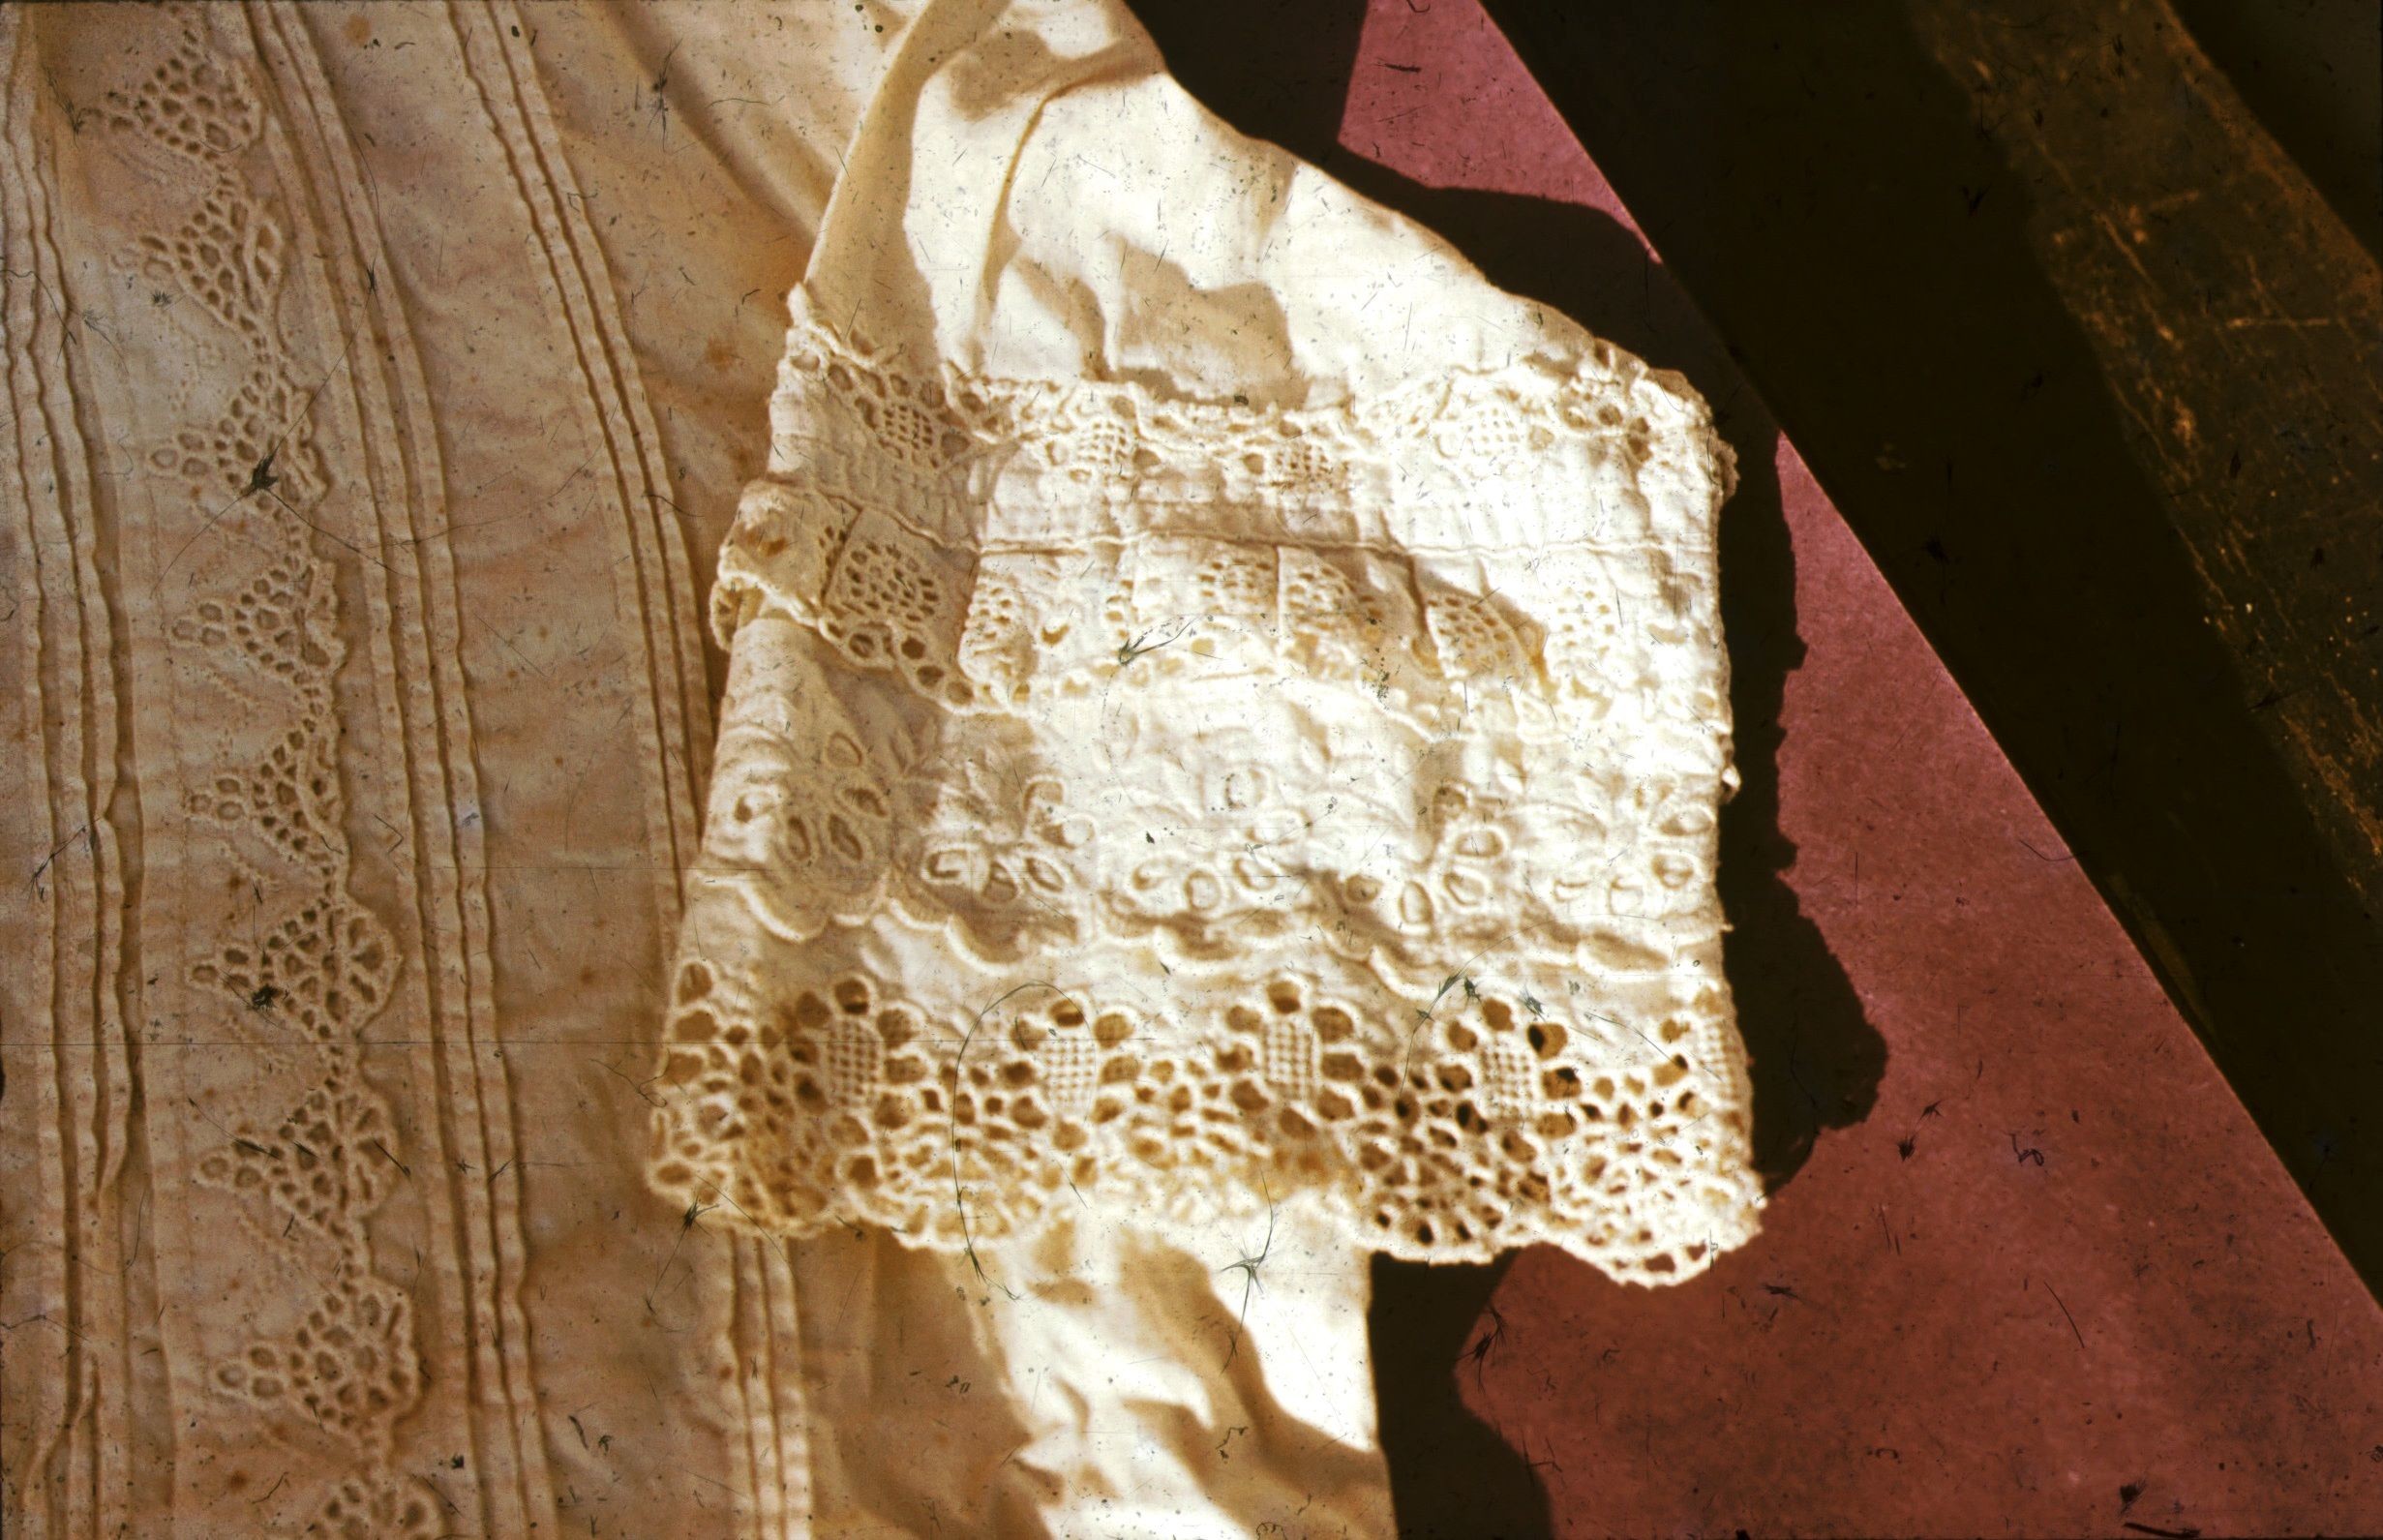 Törökkopányi fehérhímzéses női inguj (Rippl-Rónai Múzeum CC BY-NC-ND)